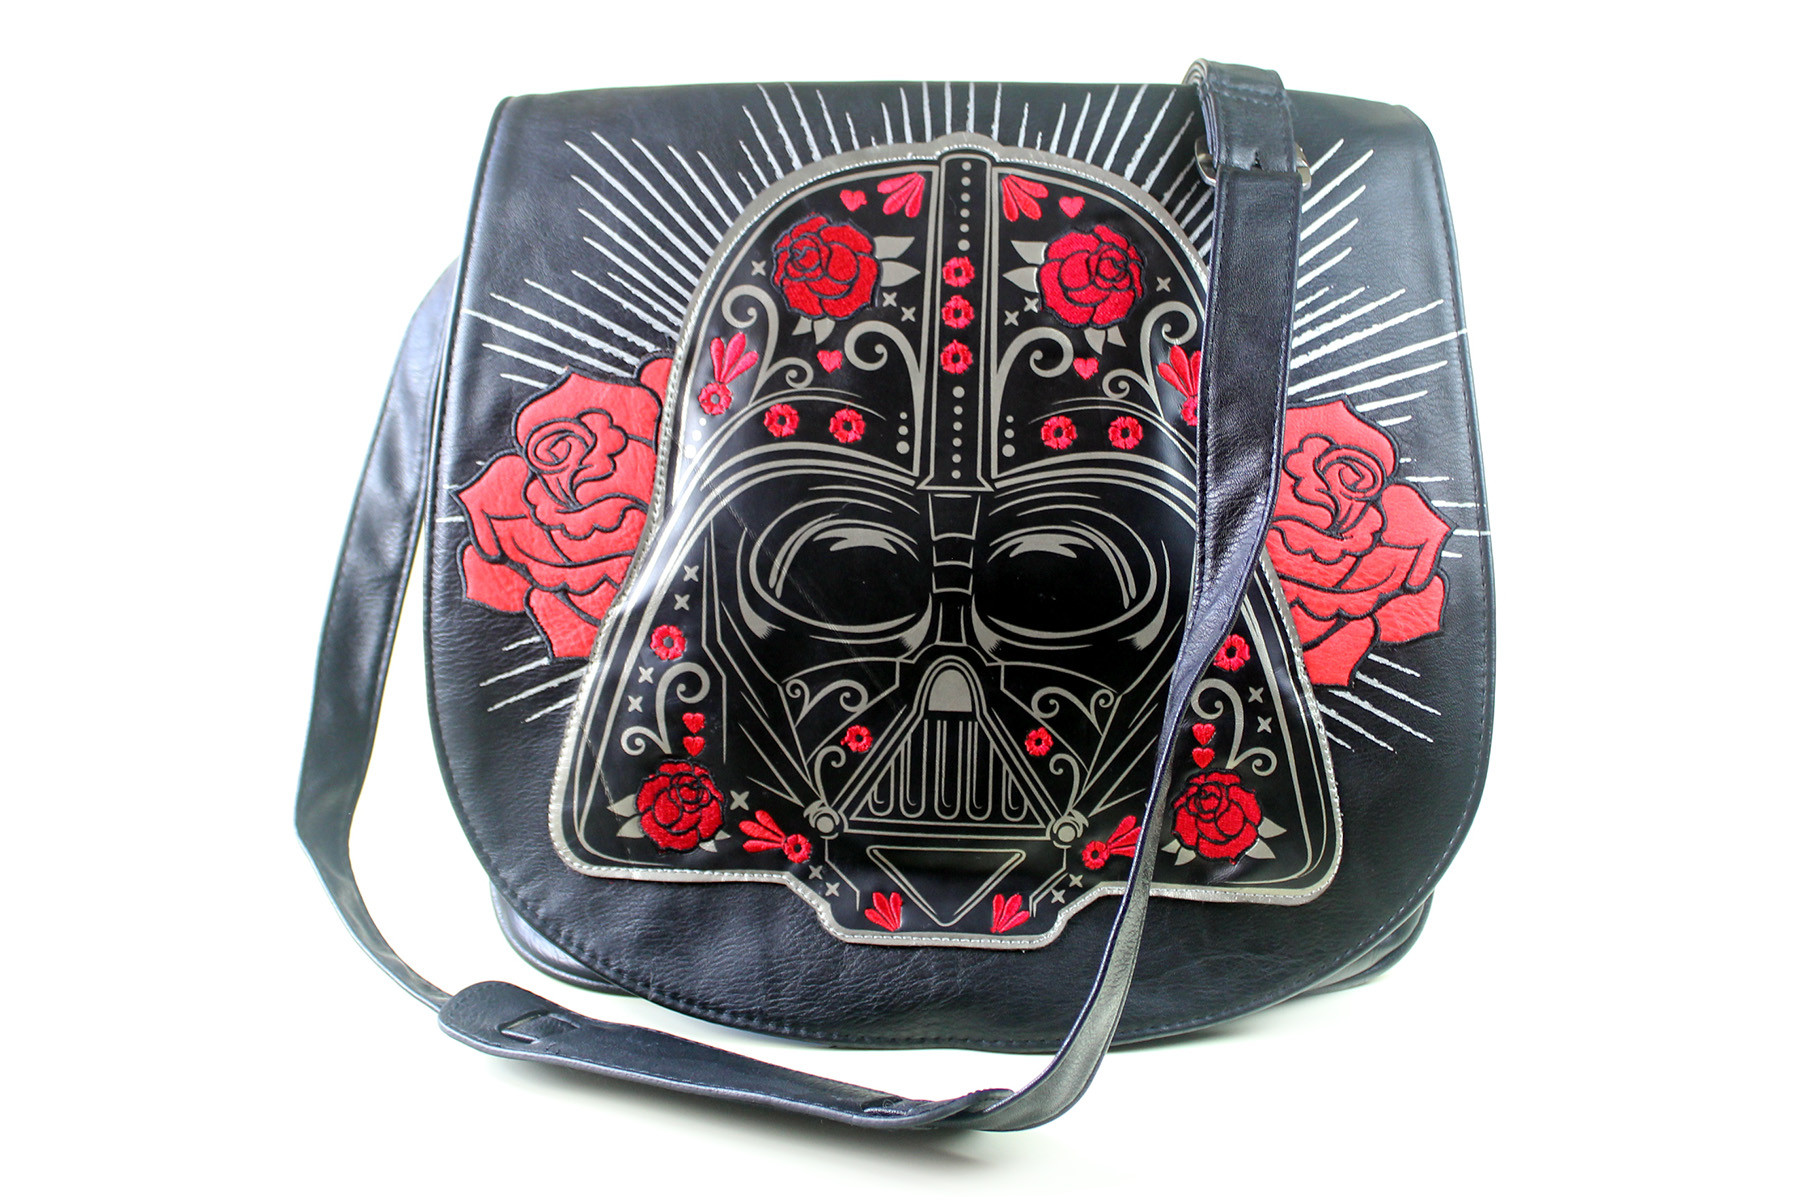 Star Wars Darth Vader Leather Handbag Purse 